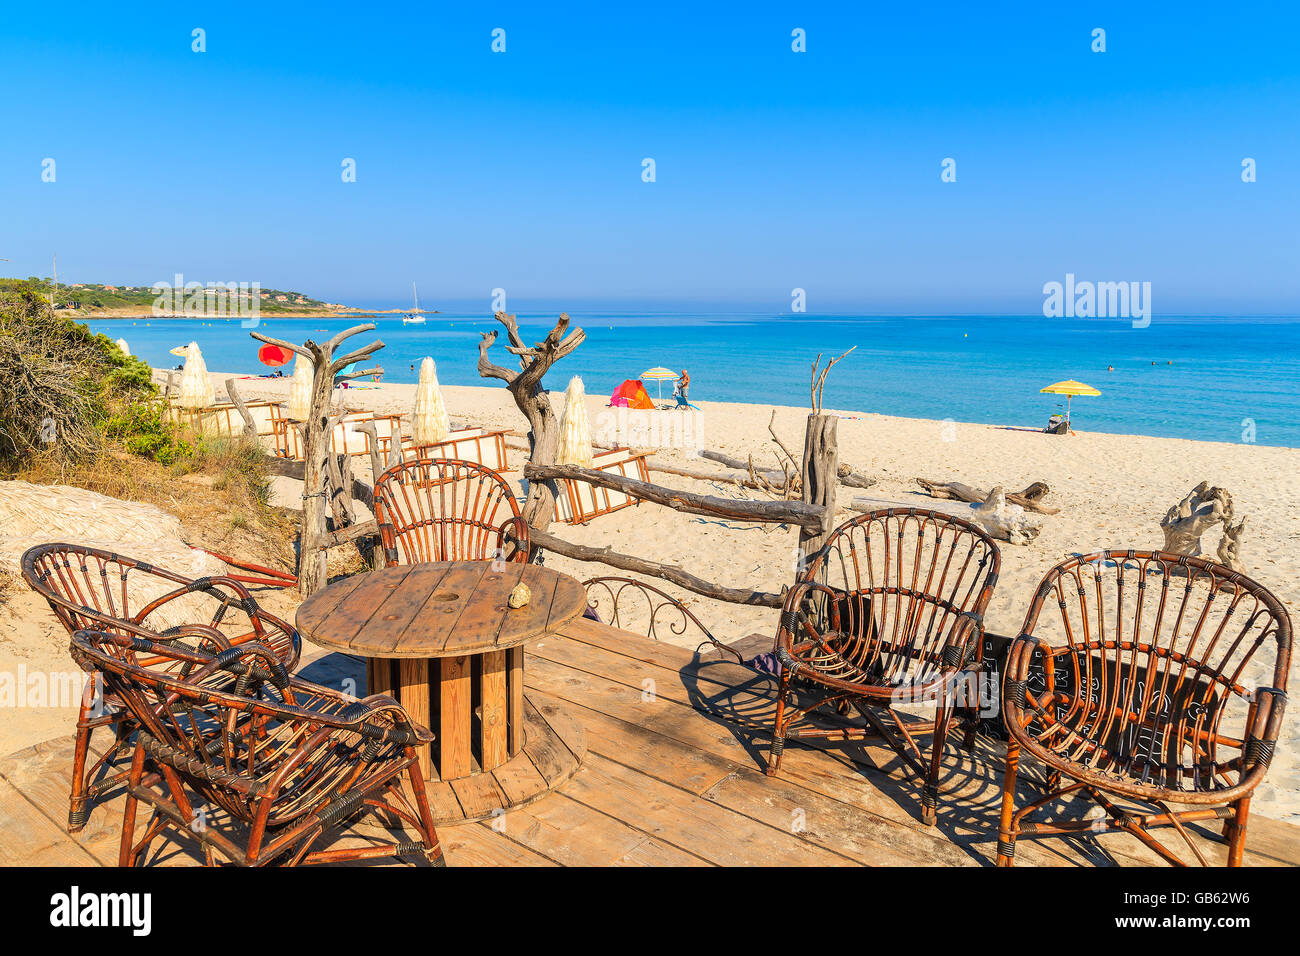 Lokalen bar für Touristen auf sandigen Bodri, Korsika, Frankreich Strand Stockfoto